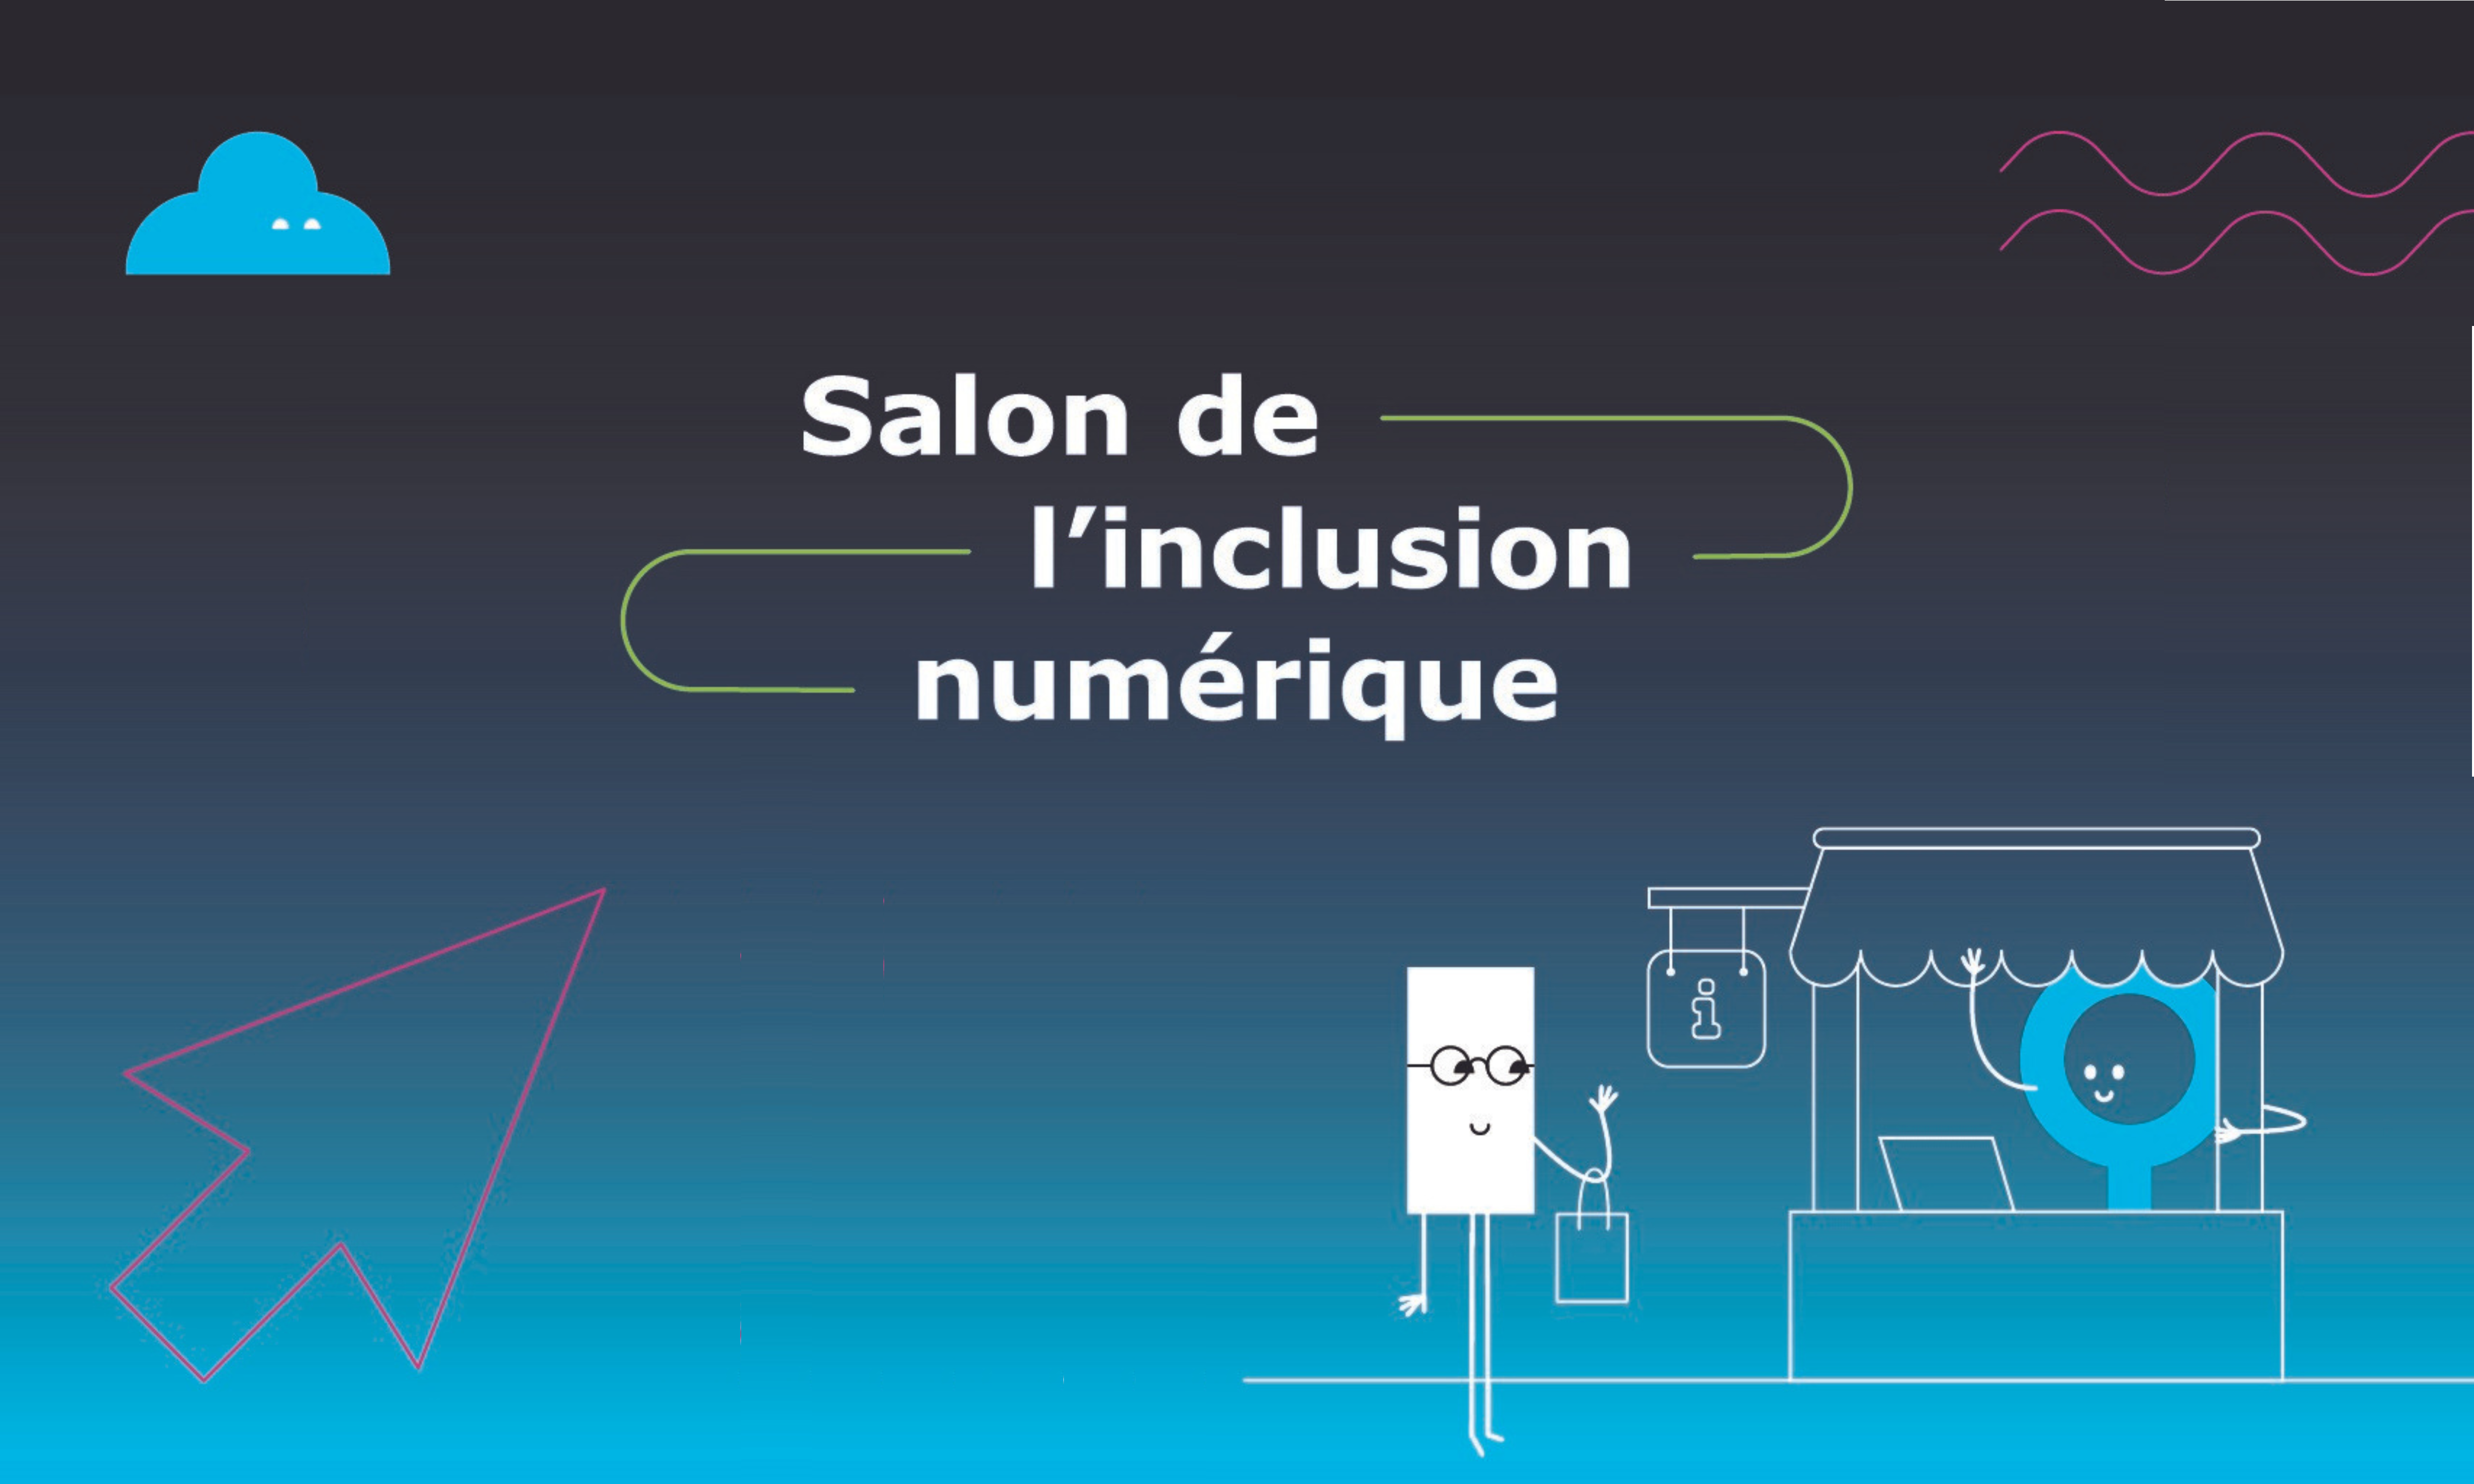 Salon de l'inclusion numérique